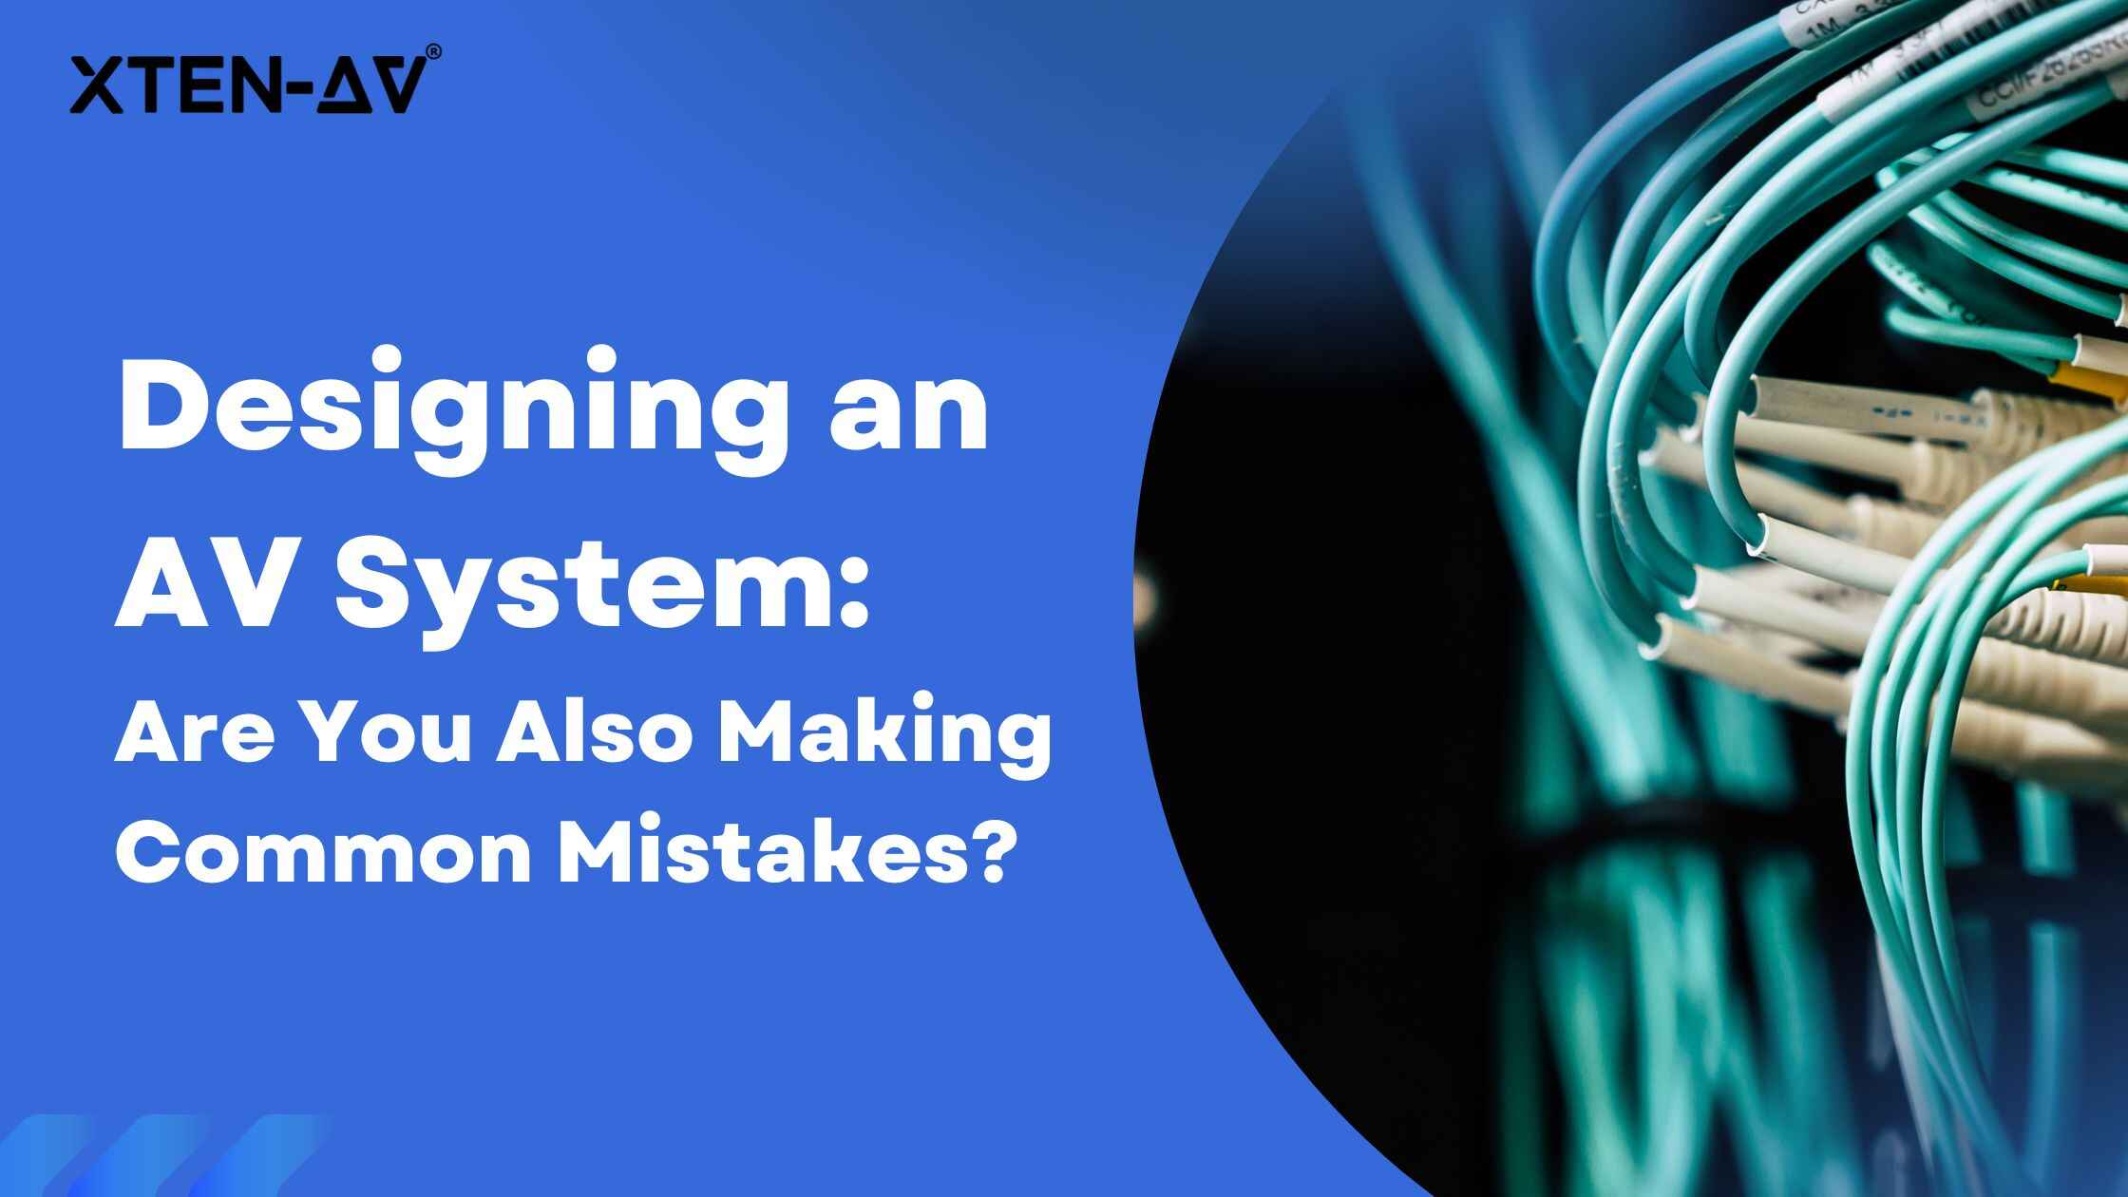 av system design Bulan 5 AV System Design - Complete Guide to Process, Mistakes to Avoid